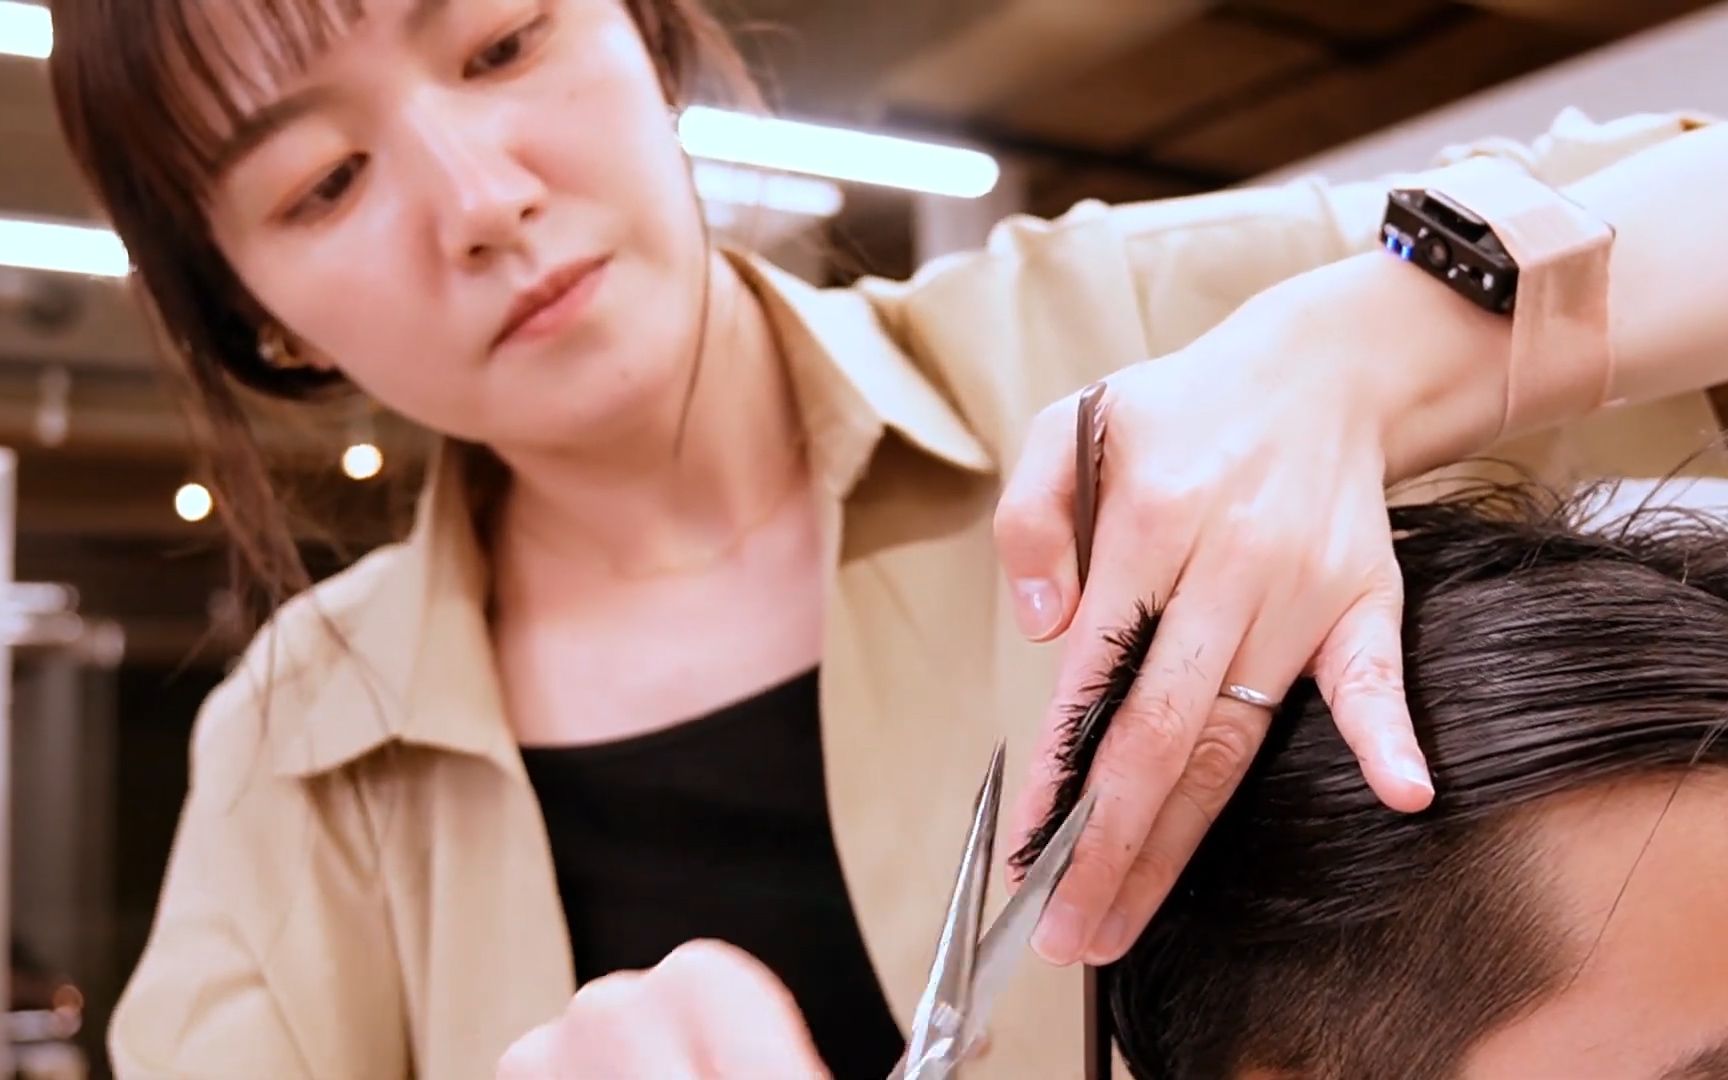 看着就觉得非常享受 日本理发店 女理发师洗头按摩理发